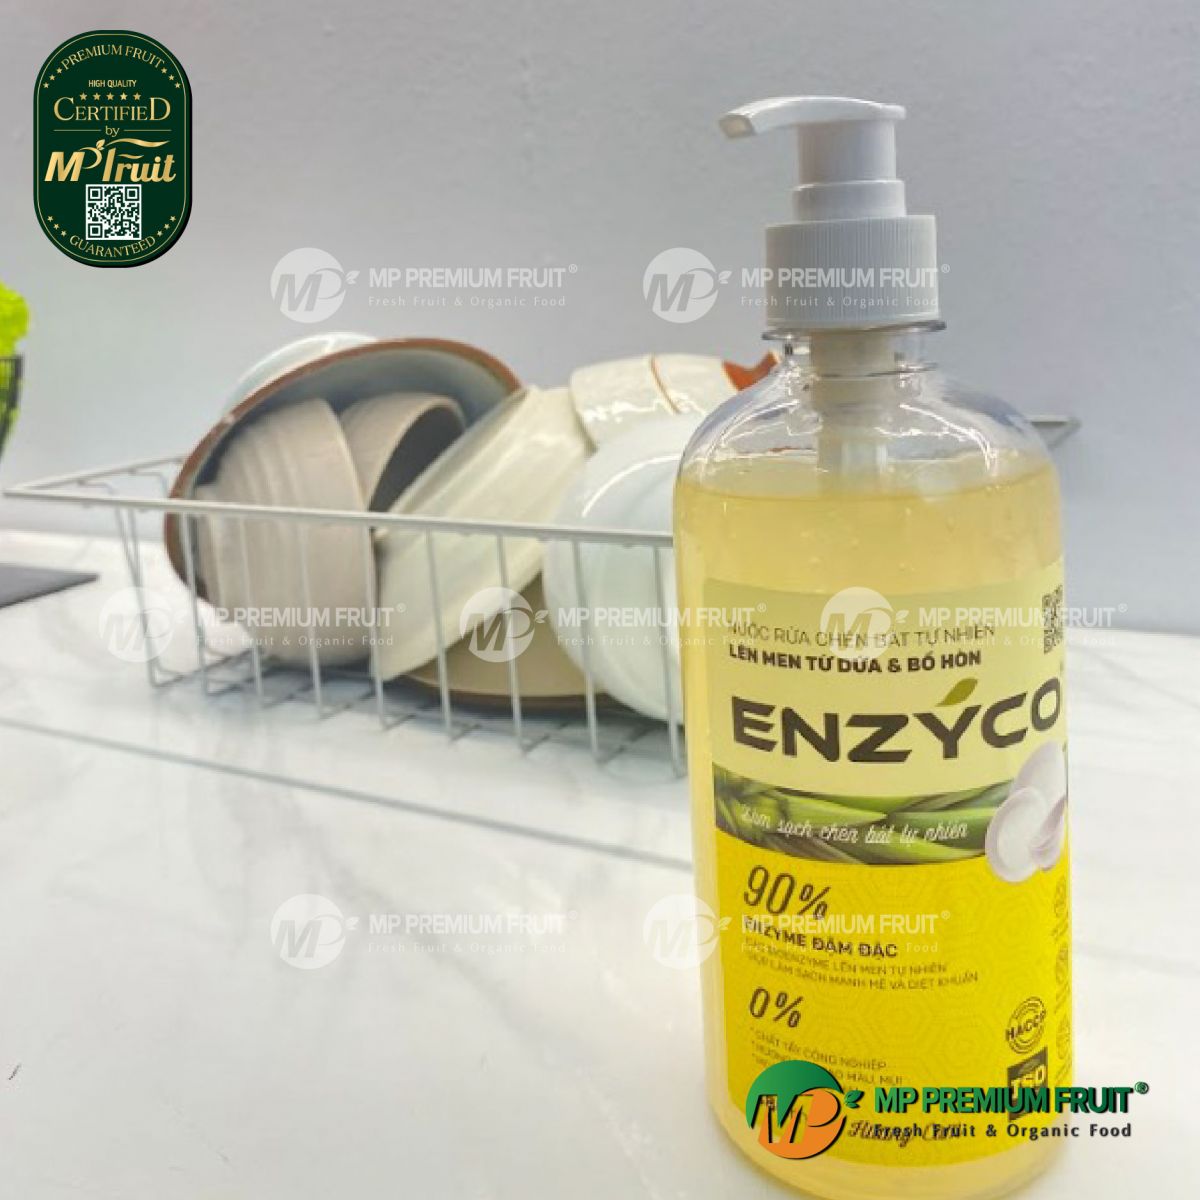 Nước Rửa Bát Tự Nhiên Bằng Enzyme Từ Dứa Enzyco - Chai 480ml tại MP Fruit